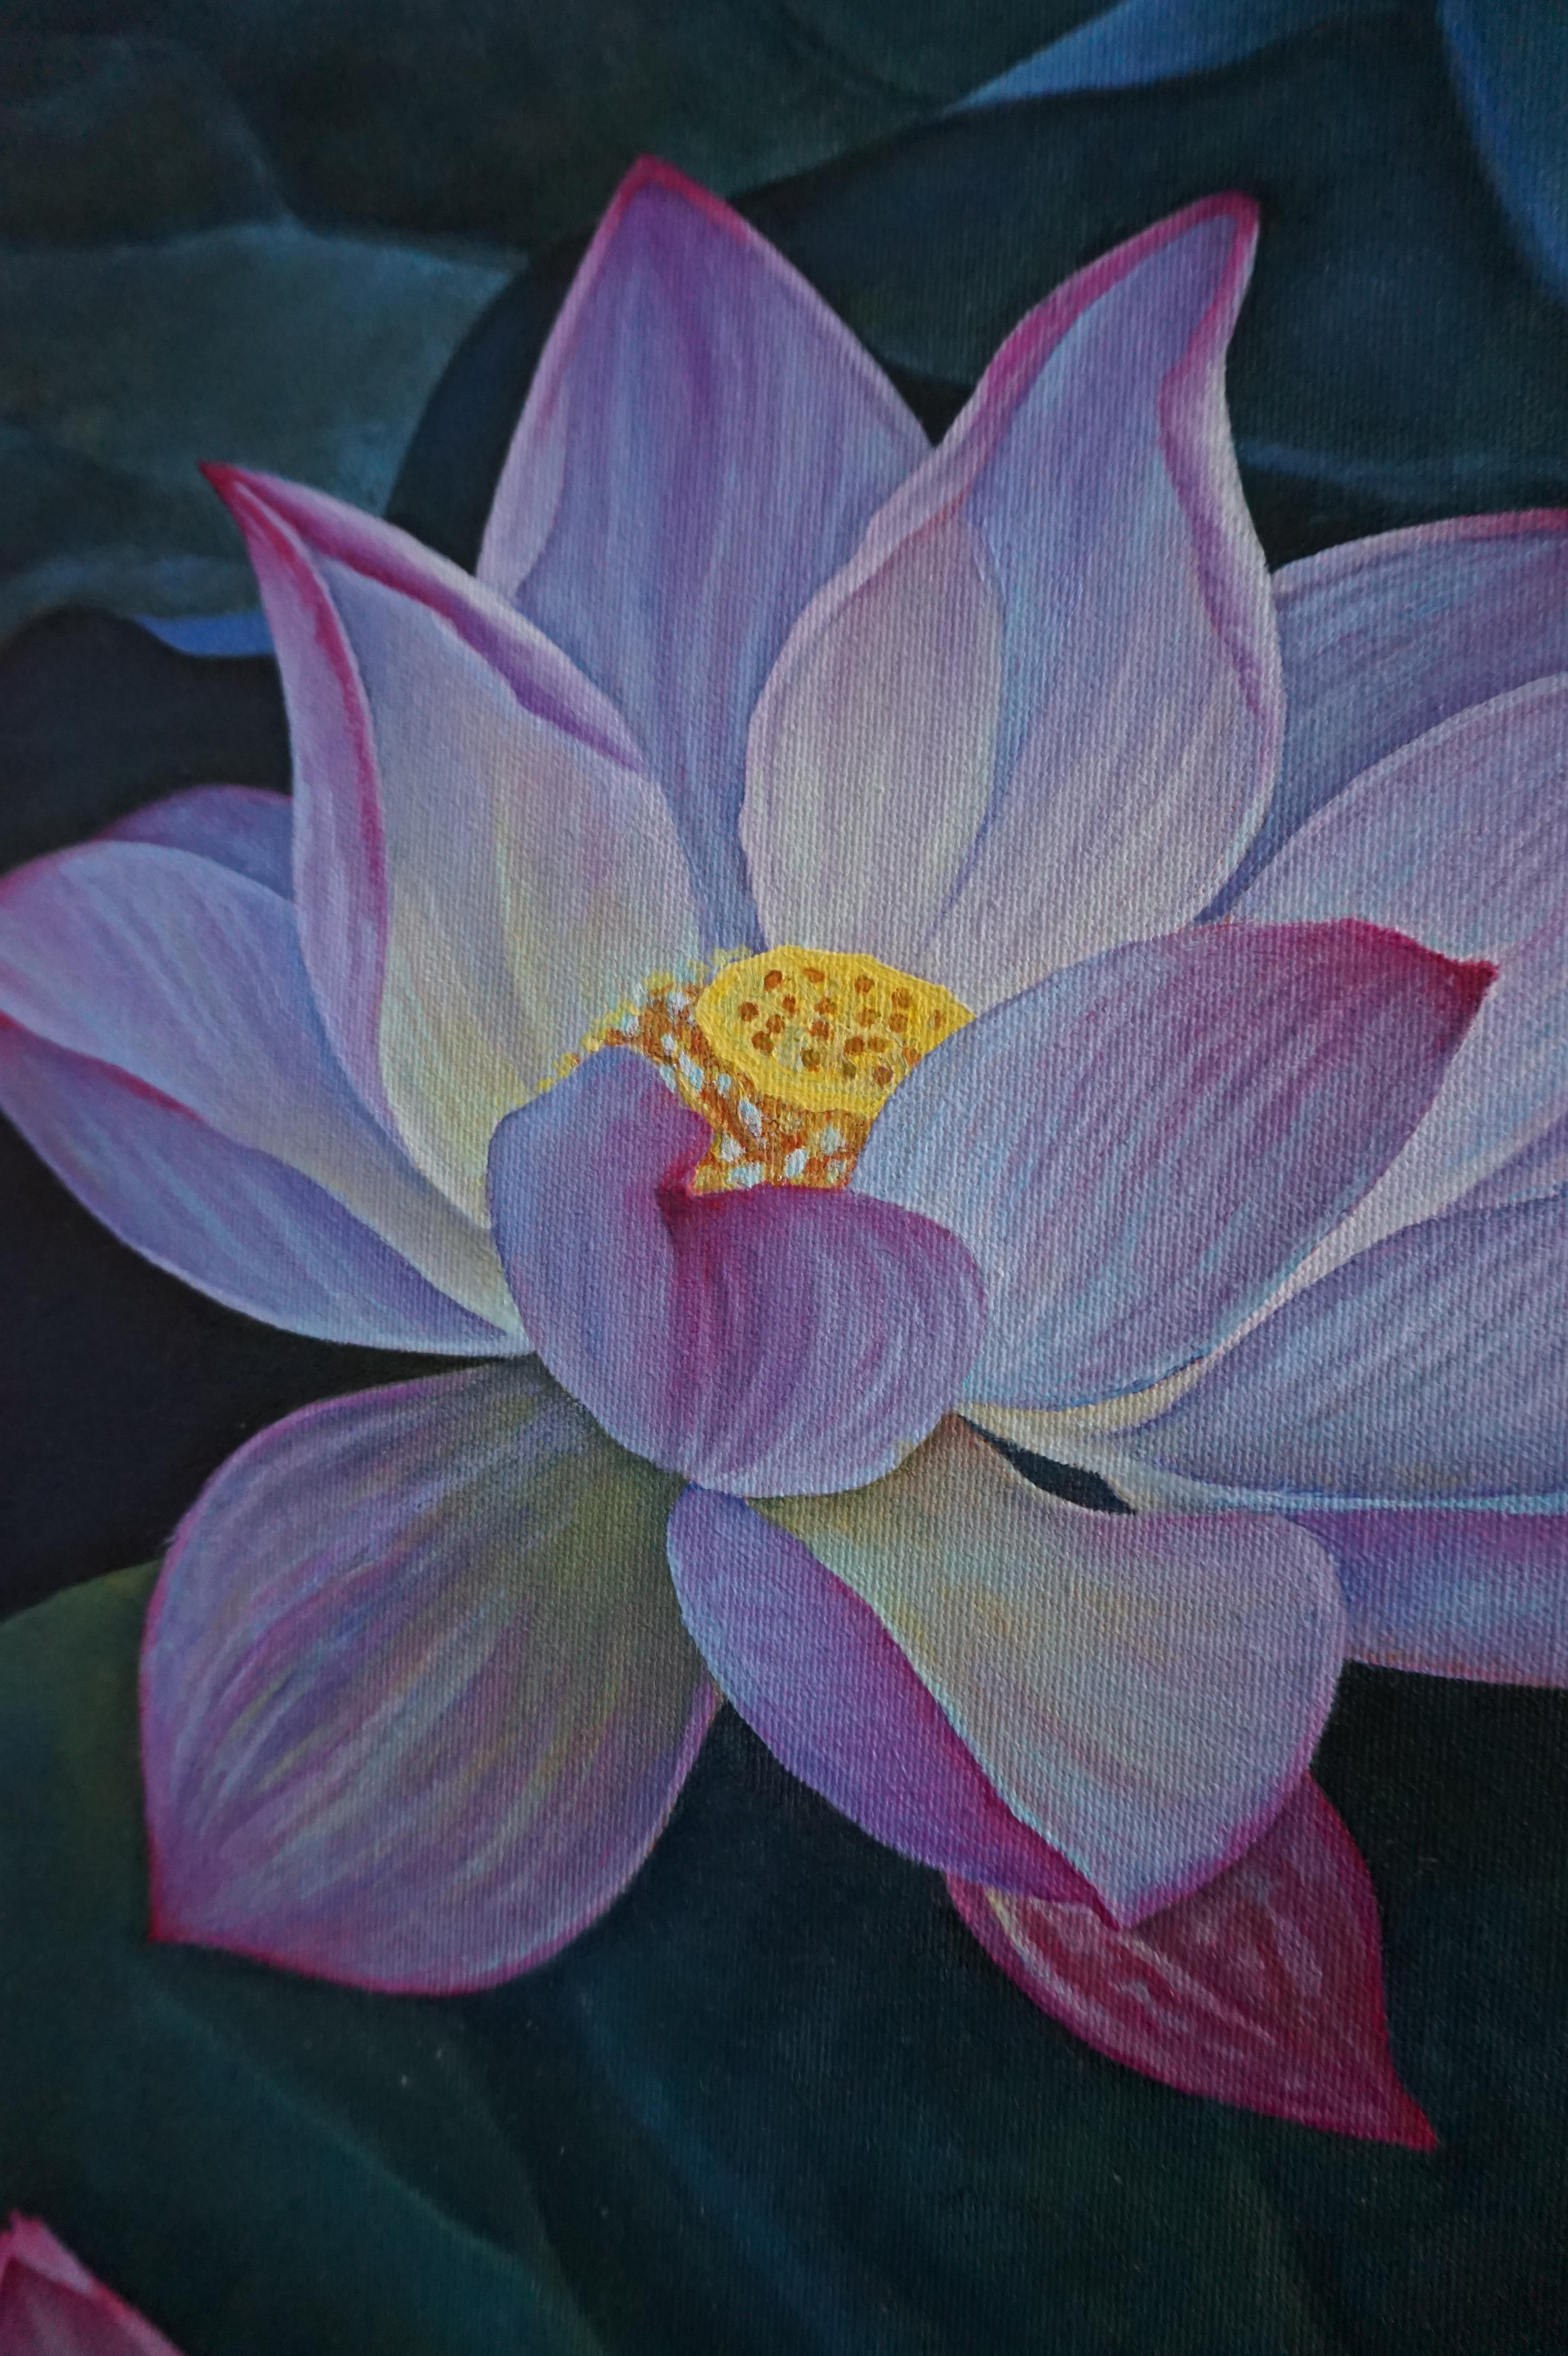 STÄRKE. REBIRTH. PURIFY - die Hauptbedeutung der wunderschönen Lotusblume und der Name dieses Gemäldes.

Der Lotus ist eine meiner Lieblingsblumen. Und ich habe sie mit viel Liebe gemalt, wobei ich besonders auf die Details geachtet habe.

Dieses